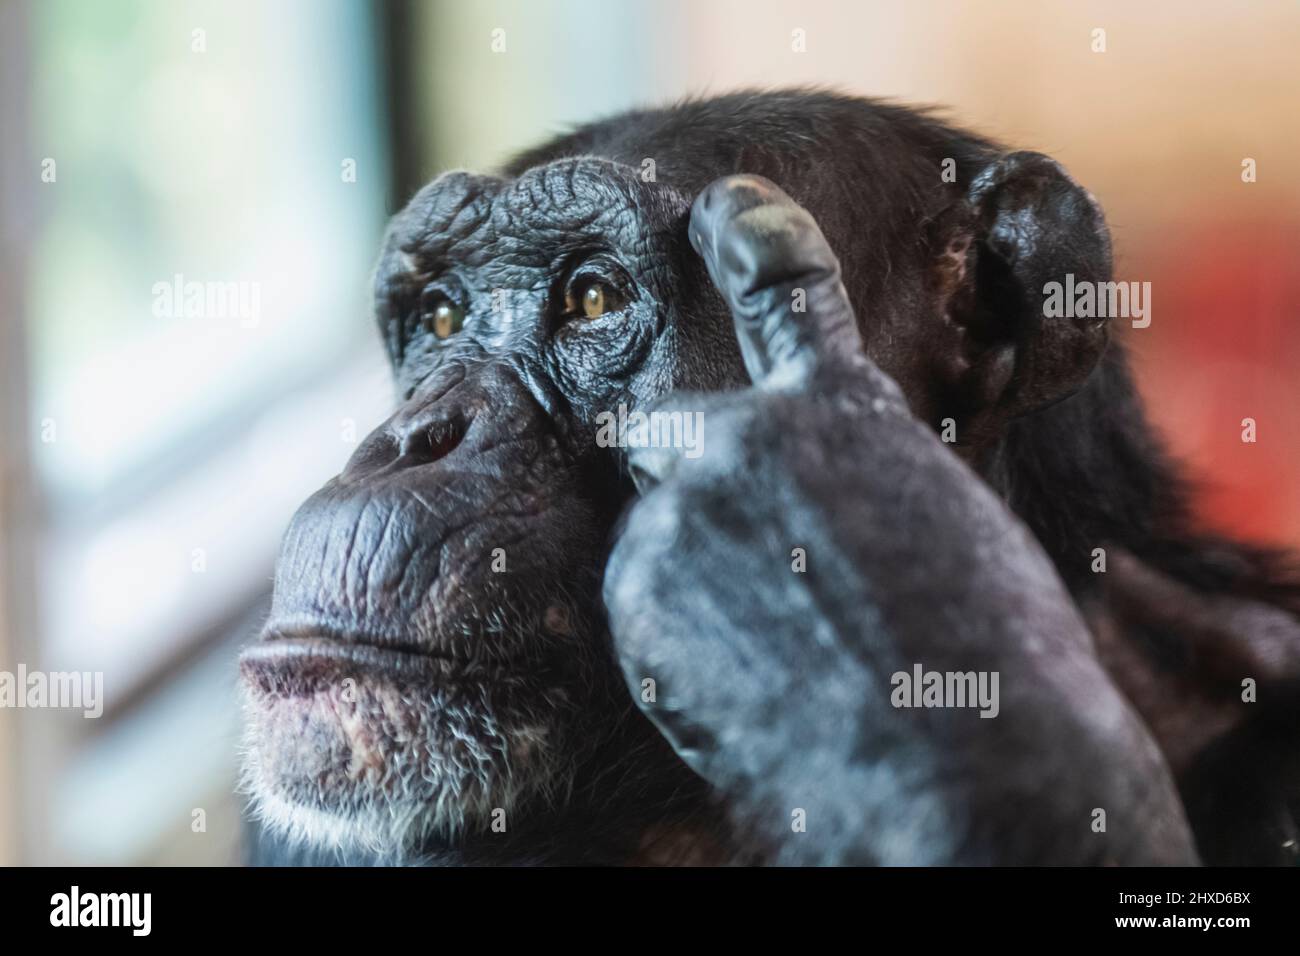 Angleterre, Dorset, Monkey World attraction, Chchimpanzee réfléchis contemplant la vie Banque D'Images